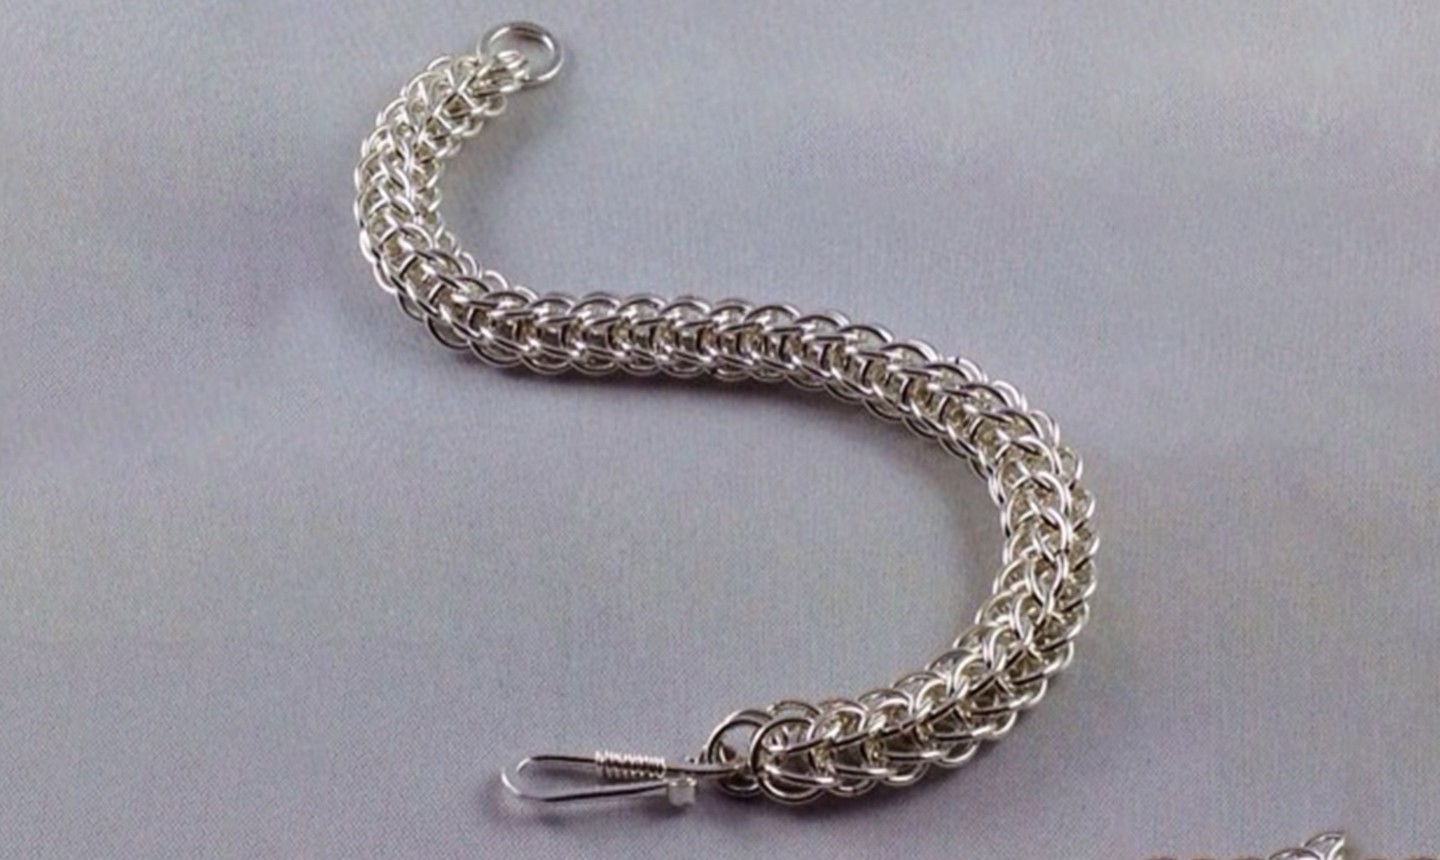 Bracelet large dainty links vintage hook closure sterling silver